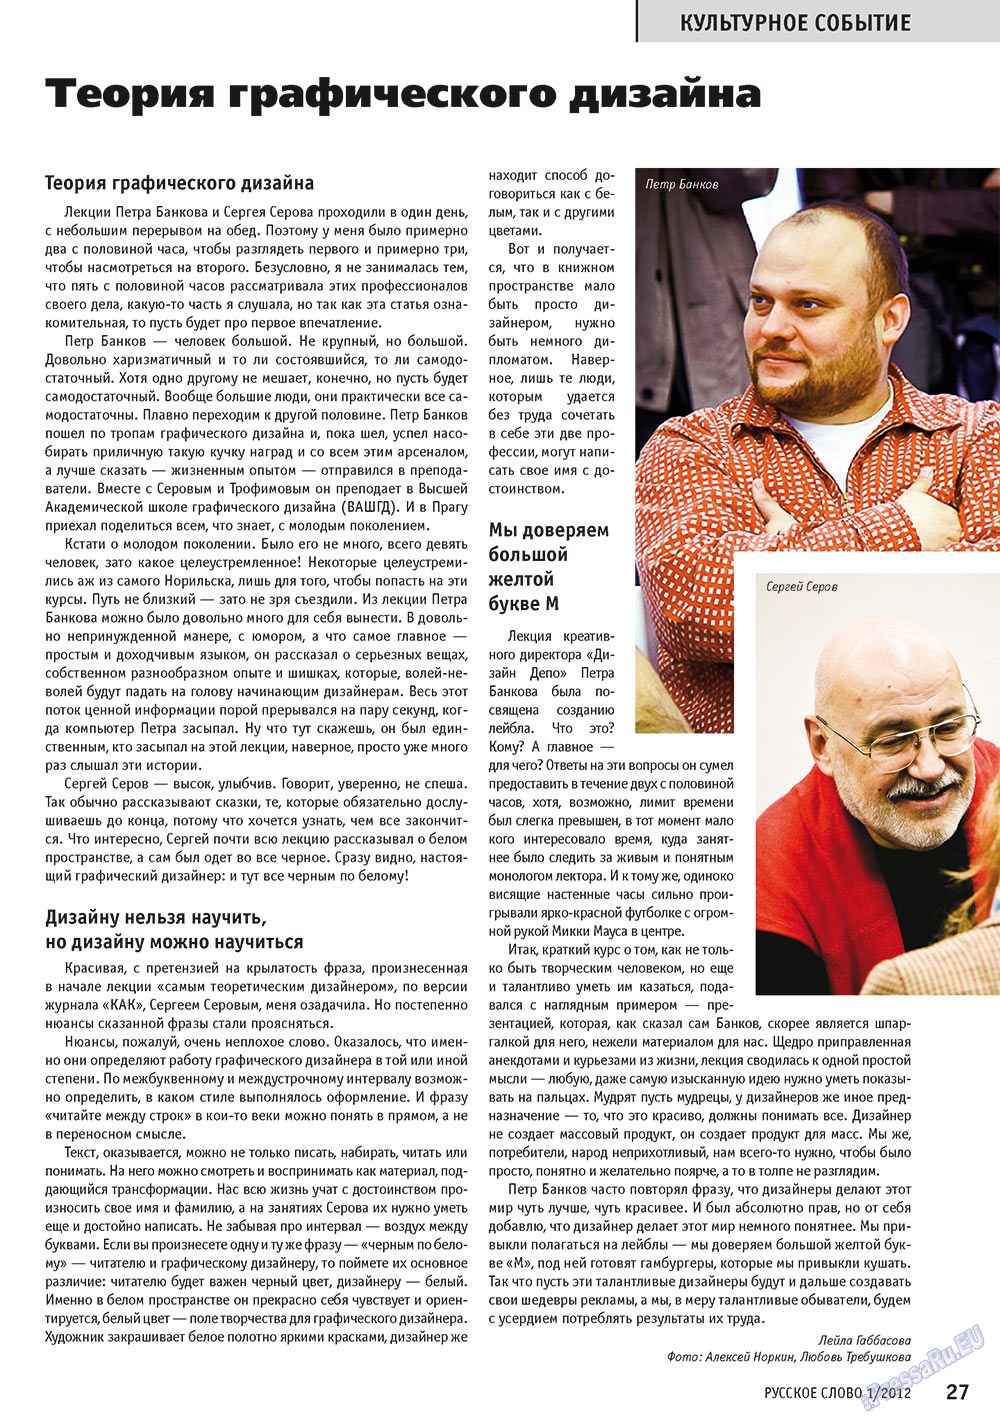 Русское слово, журнал. 2012 №1 стр.29